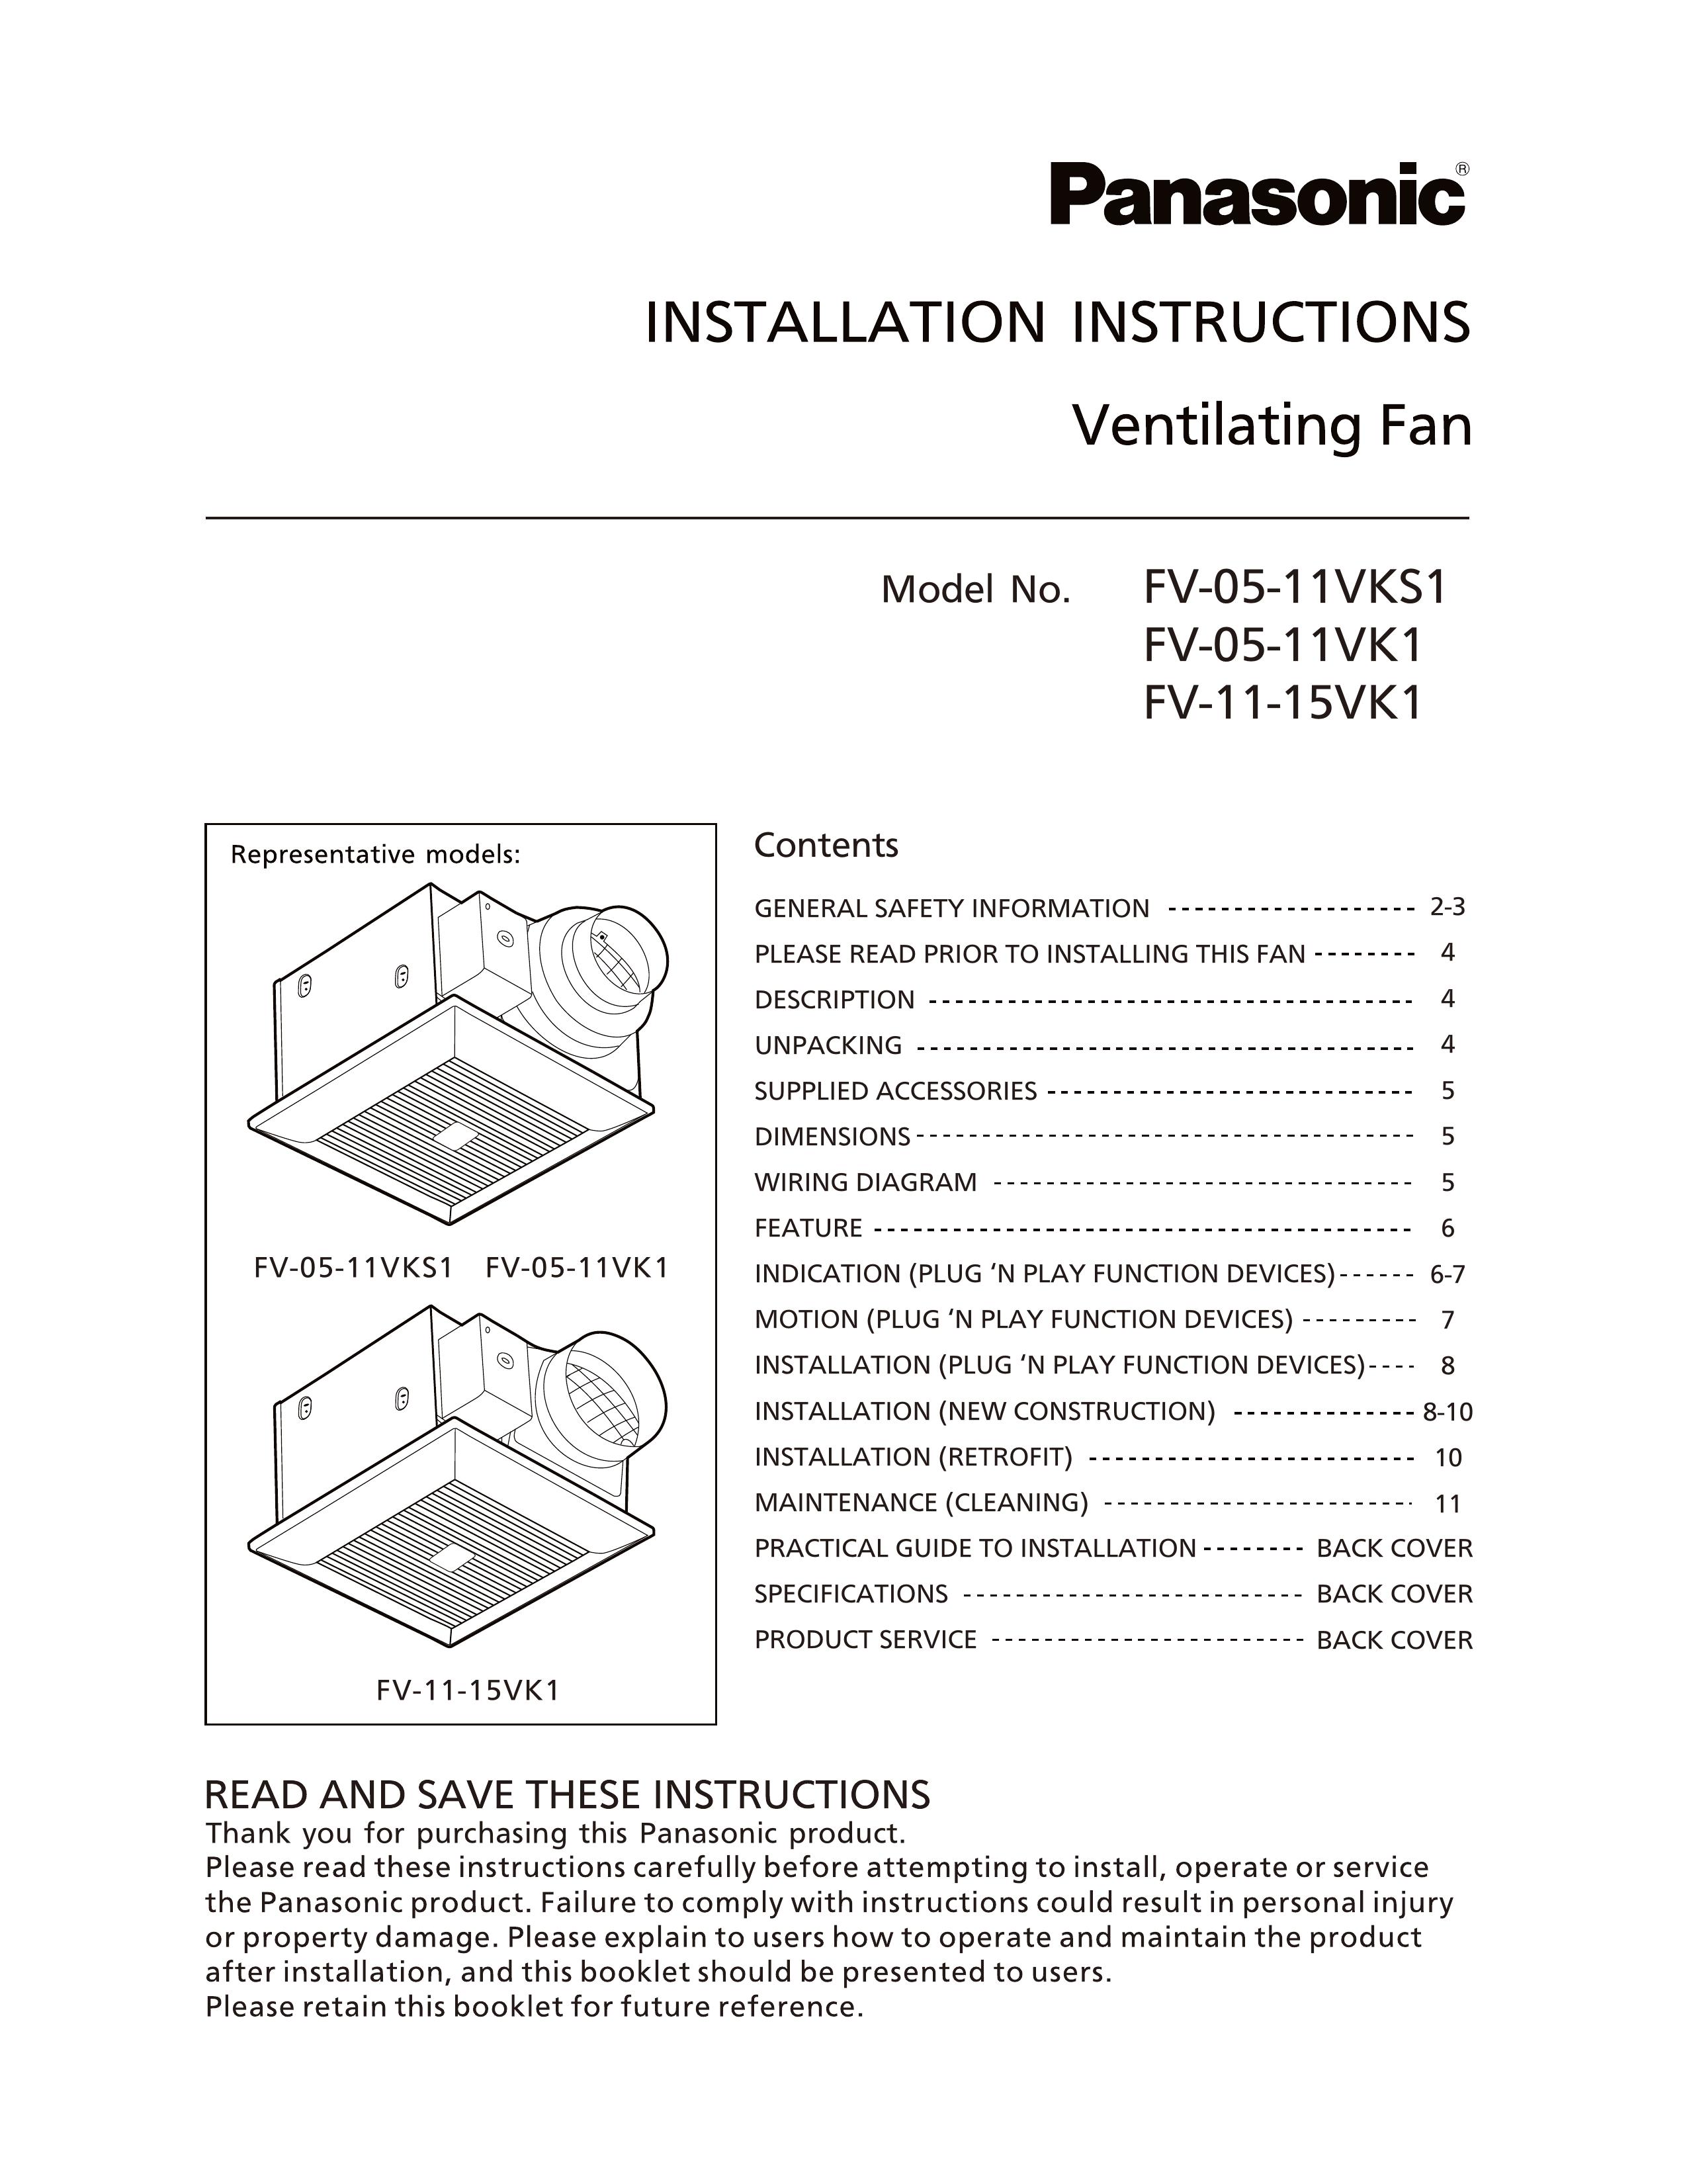 Panasonic FV-11-15VK1 Ventilation Hood User Manual